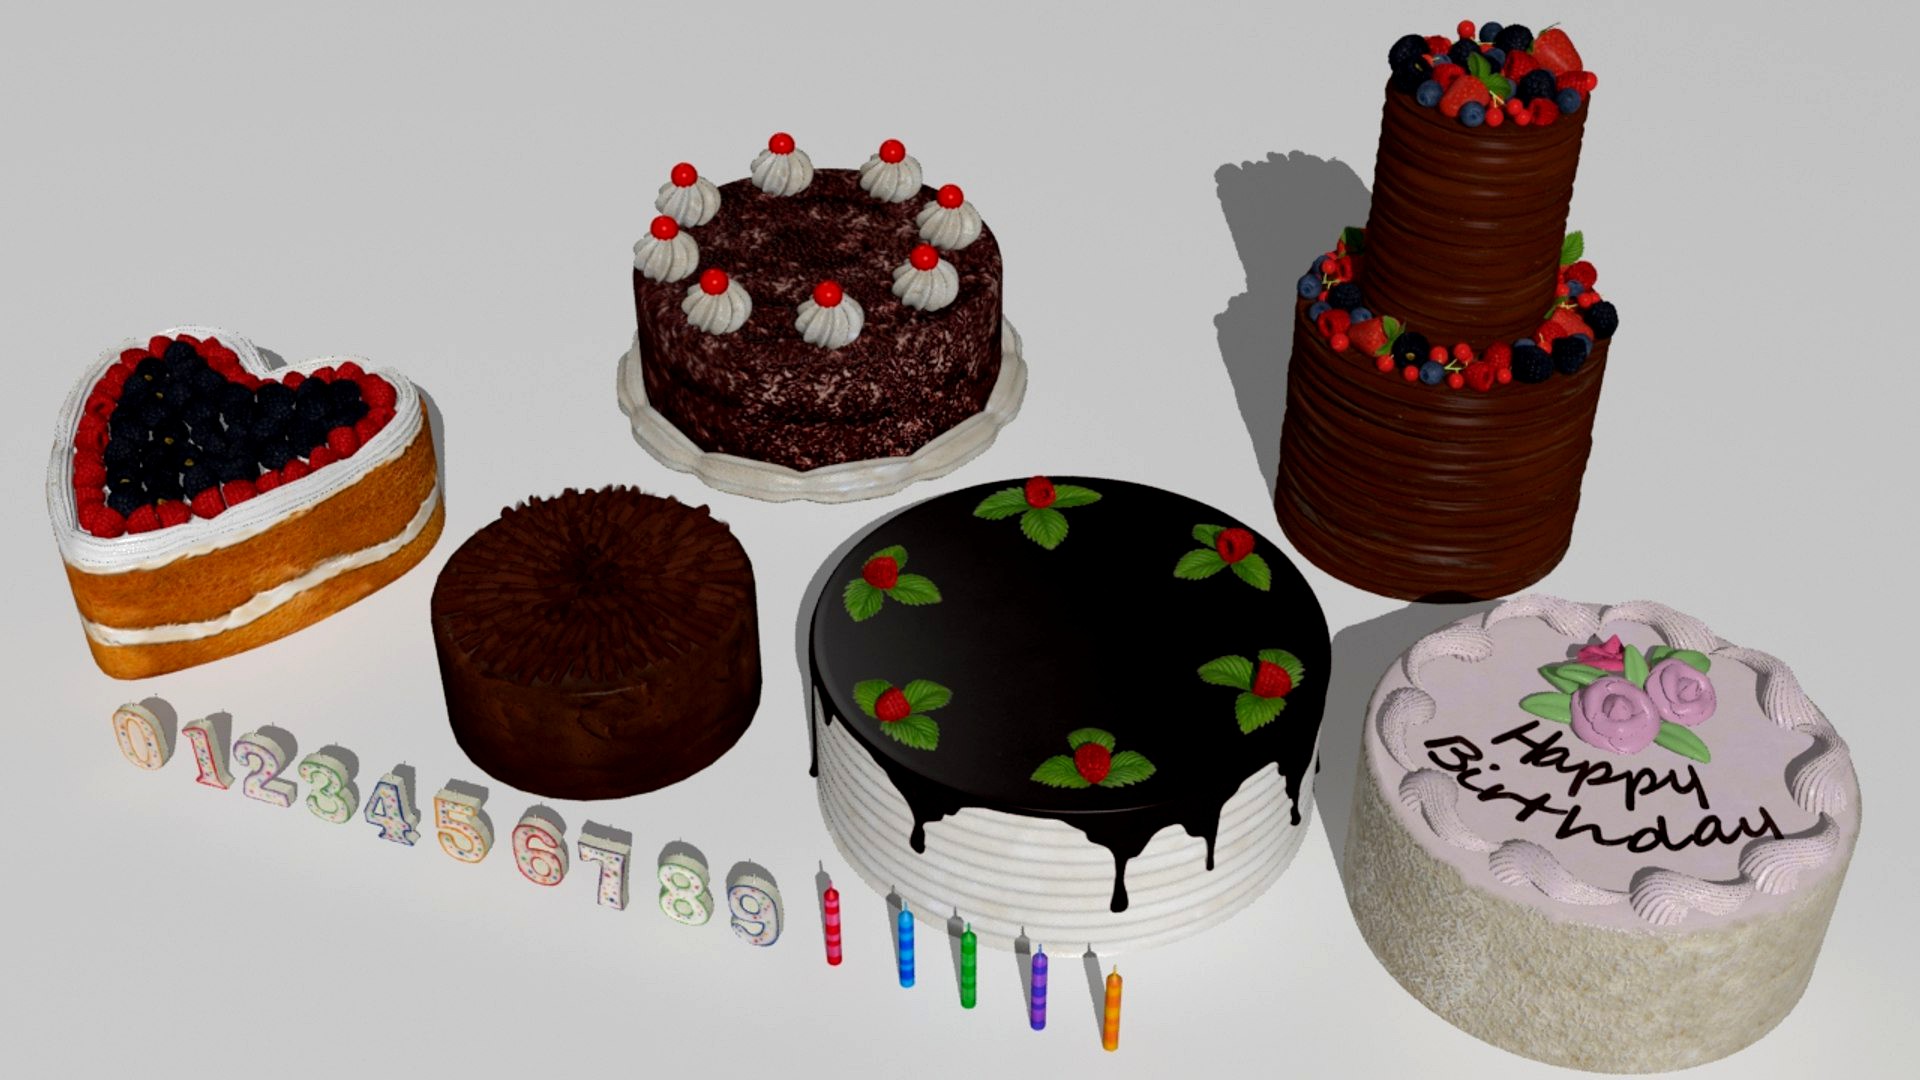 Six cakes